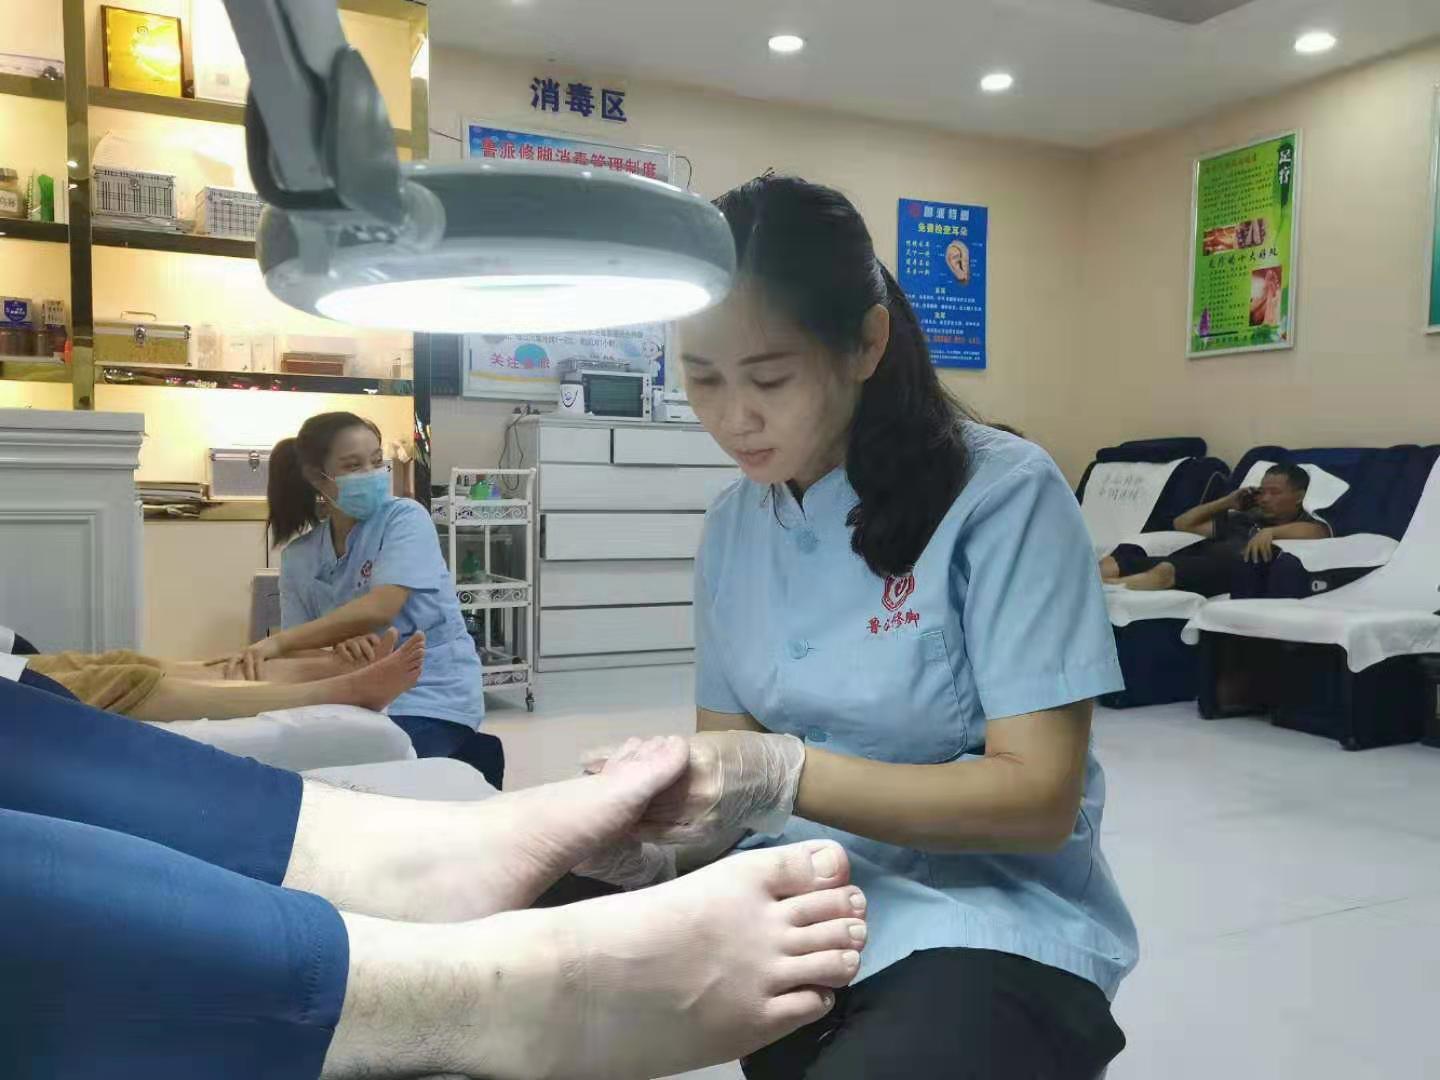 广州家庭主妇游女士加盟鲁派修脚创业成功分店开不停